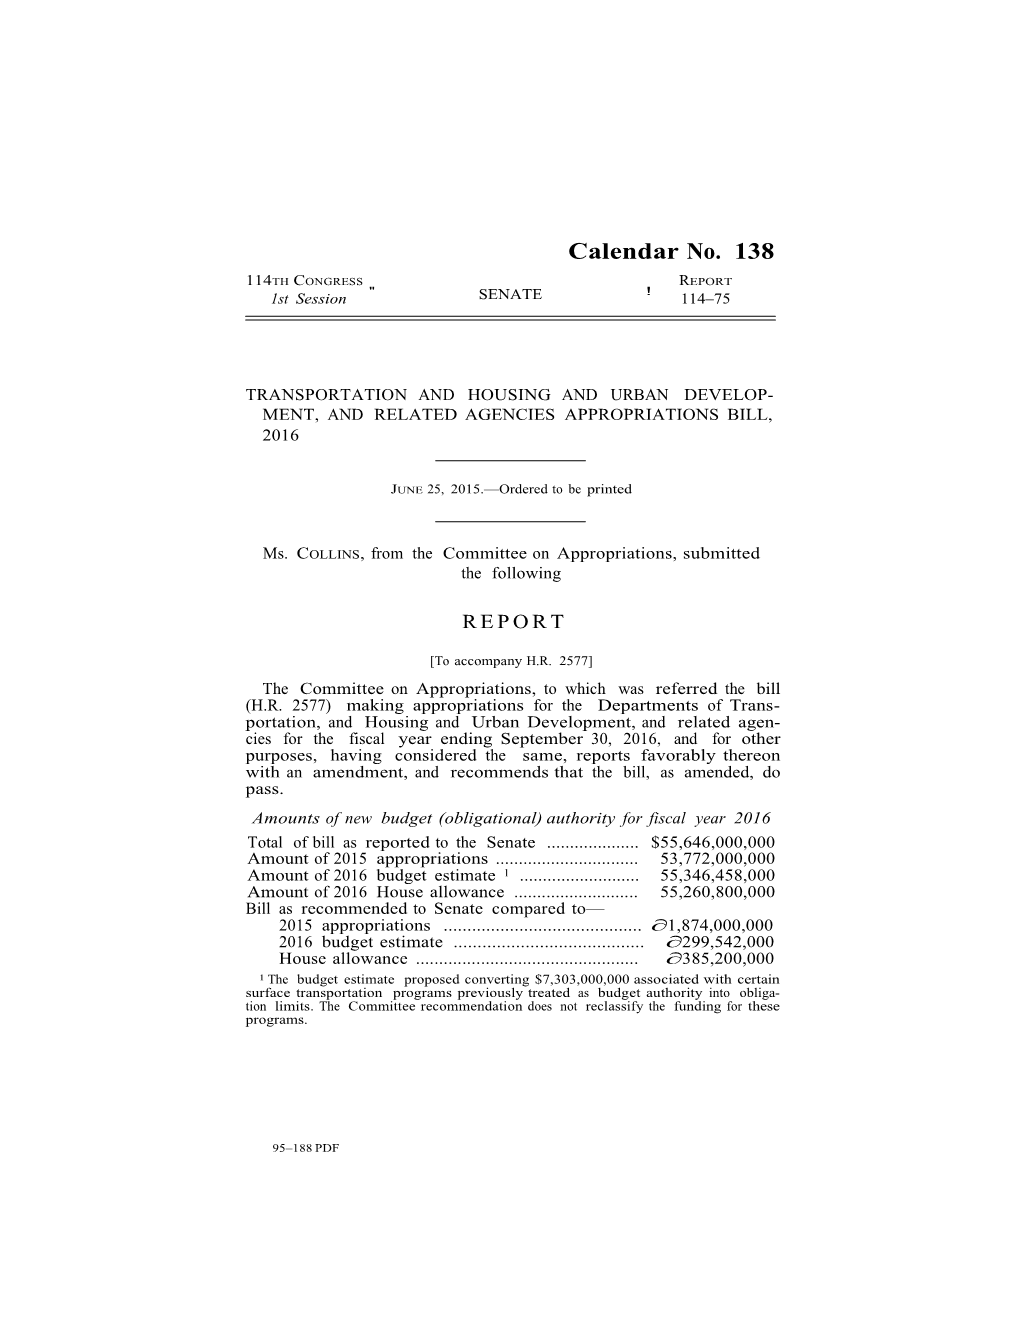 Senate FY16 THUD Report, H.R. 2577